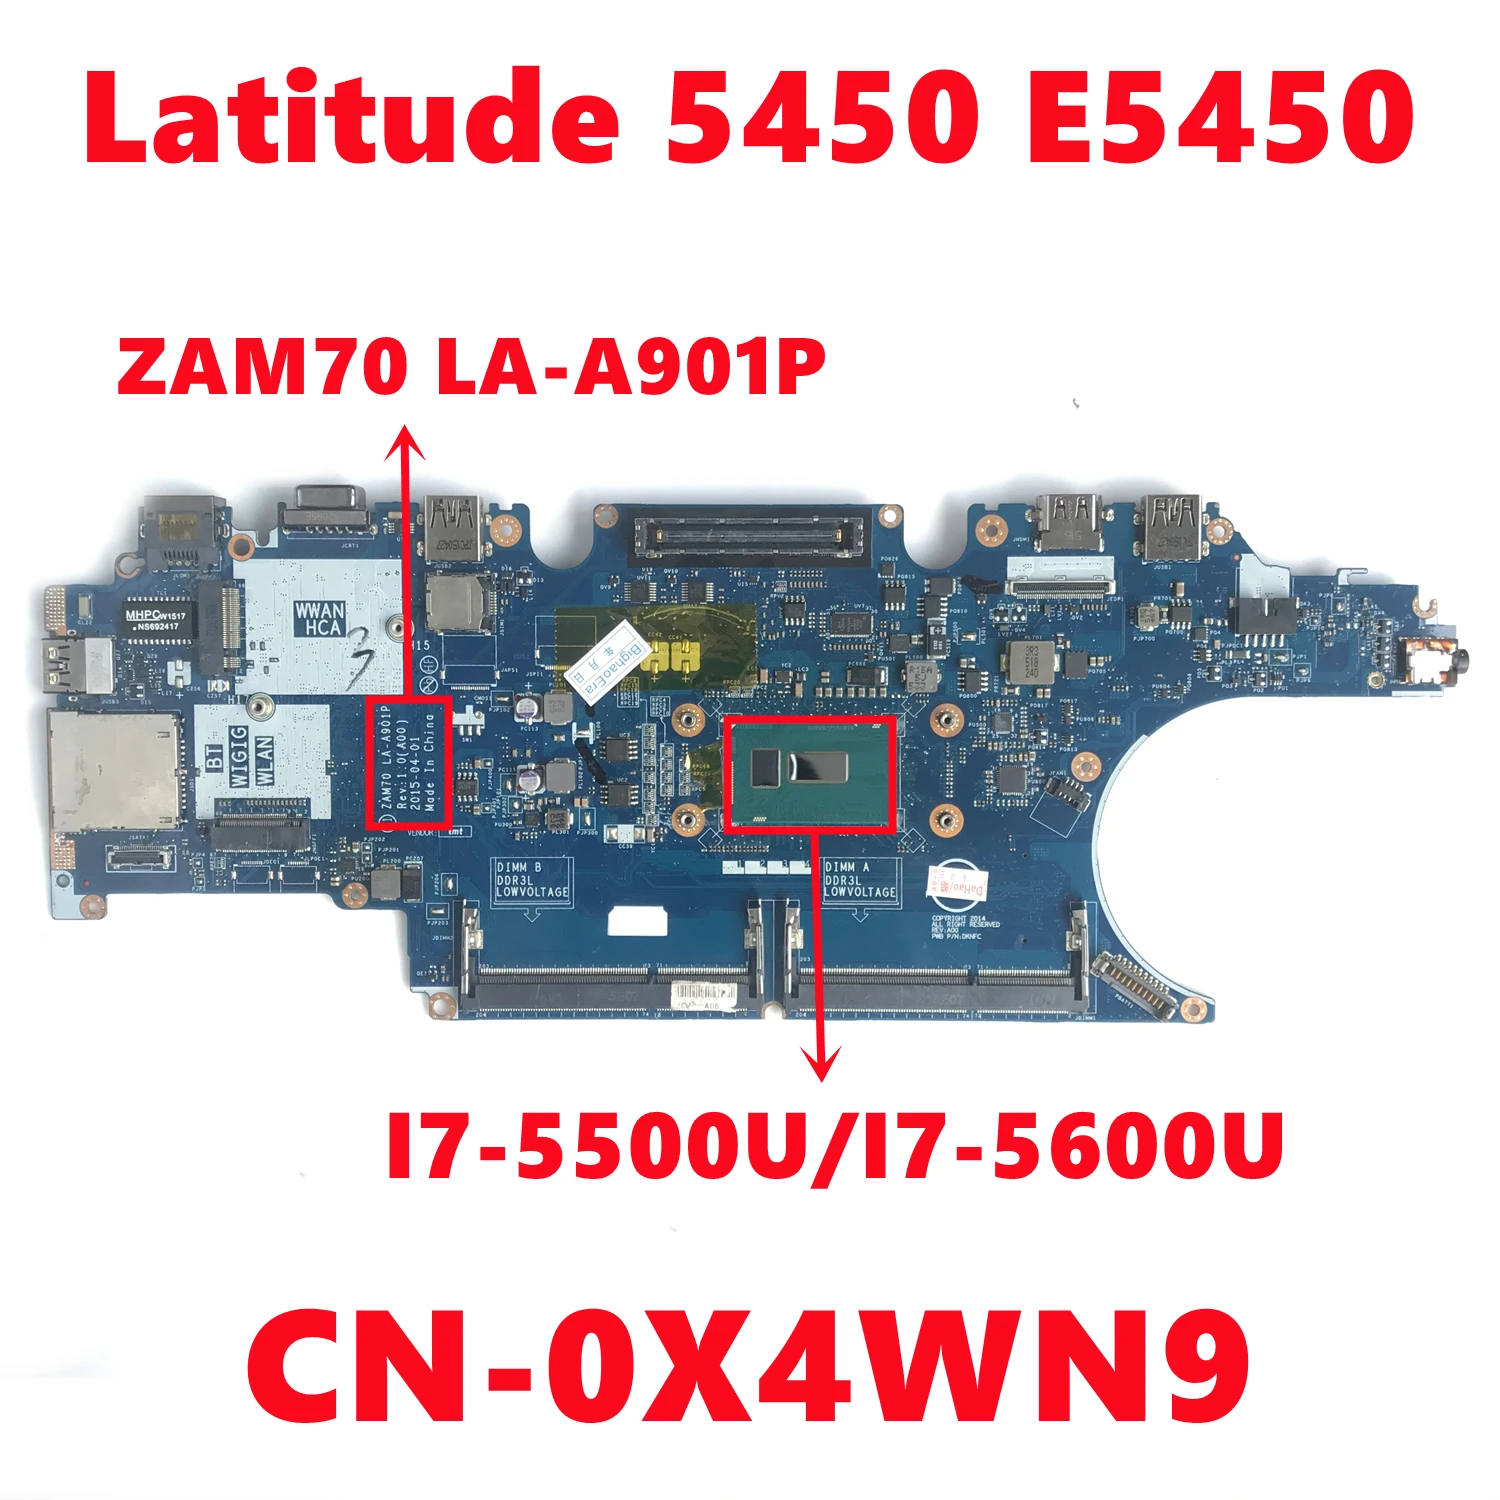 CN-0X4WN9 0X4WN9 X4WN9  dell Latitude 5450 E5450,     ZAM70  LA-A901P I7-5600U,  DDR3 100%, 